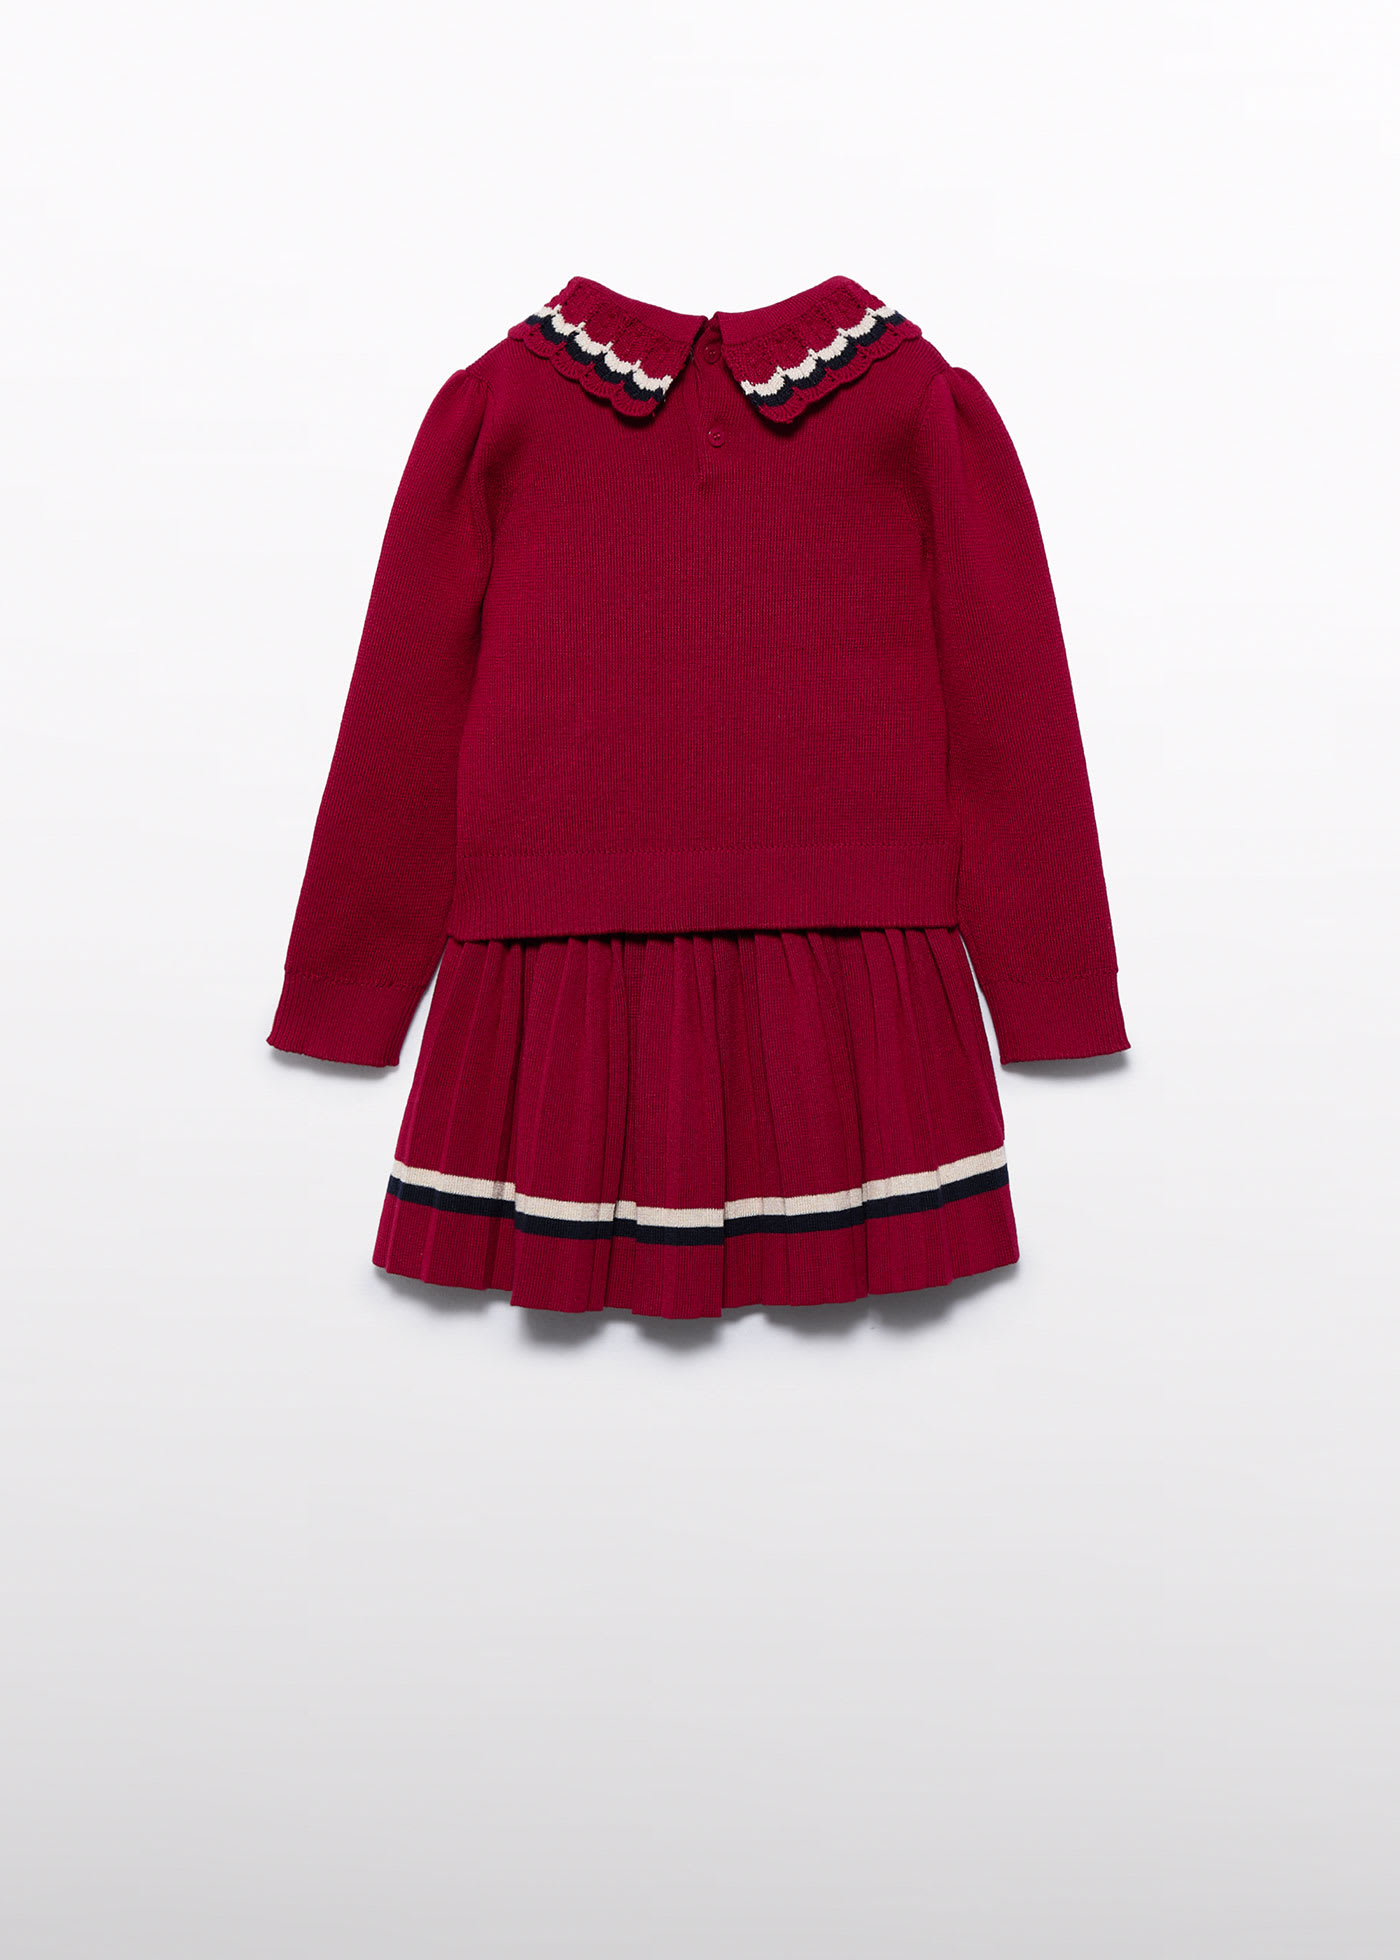 Conjunto falda tricot plisado niña